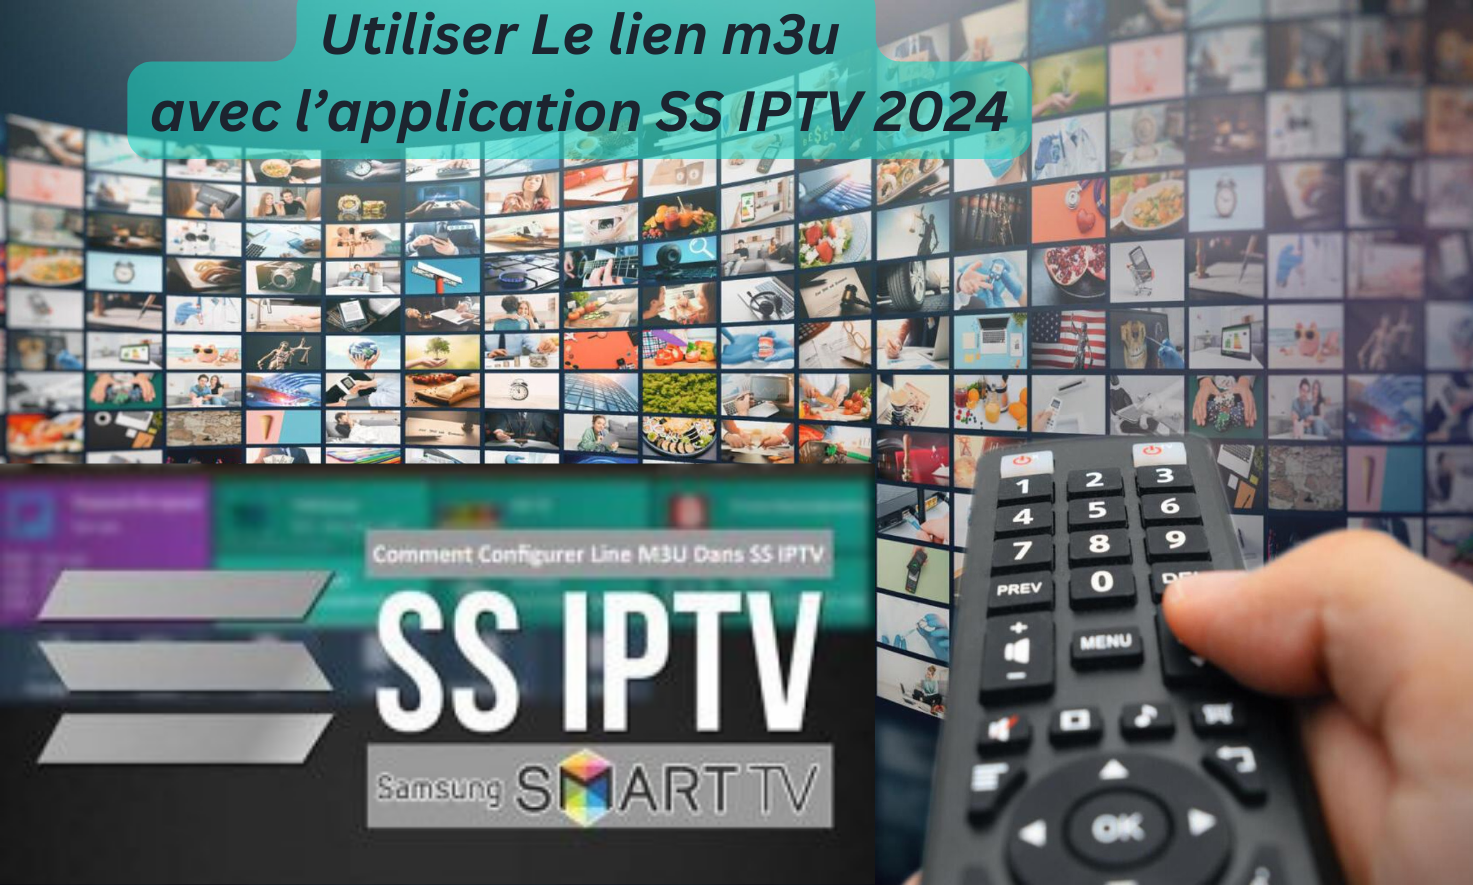 Utiliser Le lien m3u avec l’application SS IPTV 2024